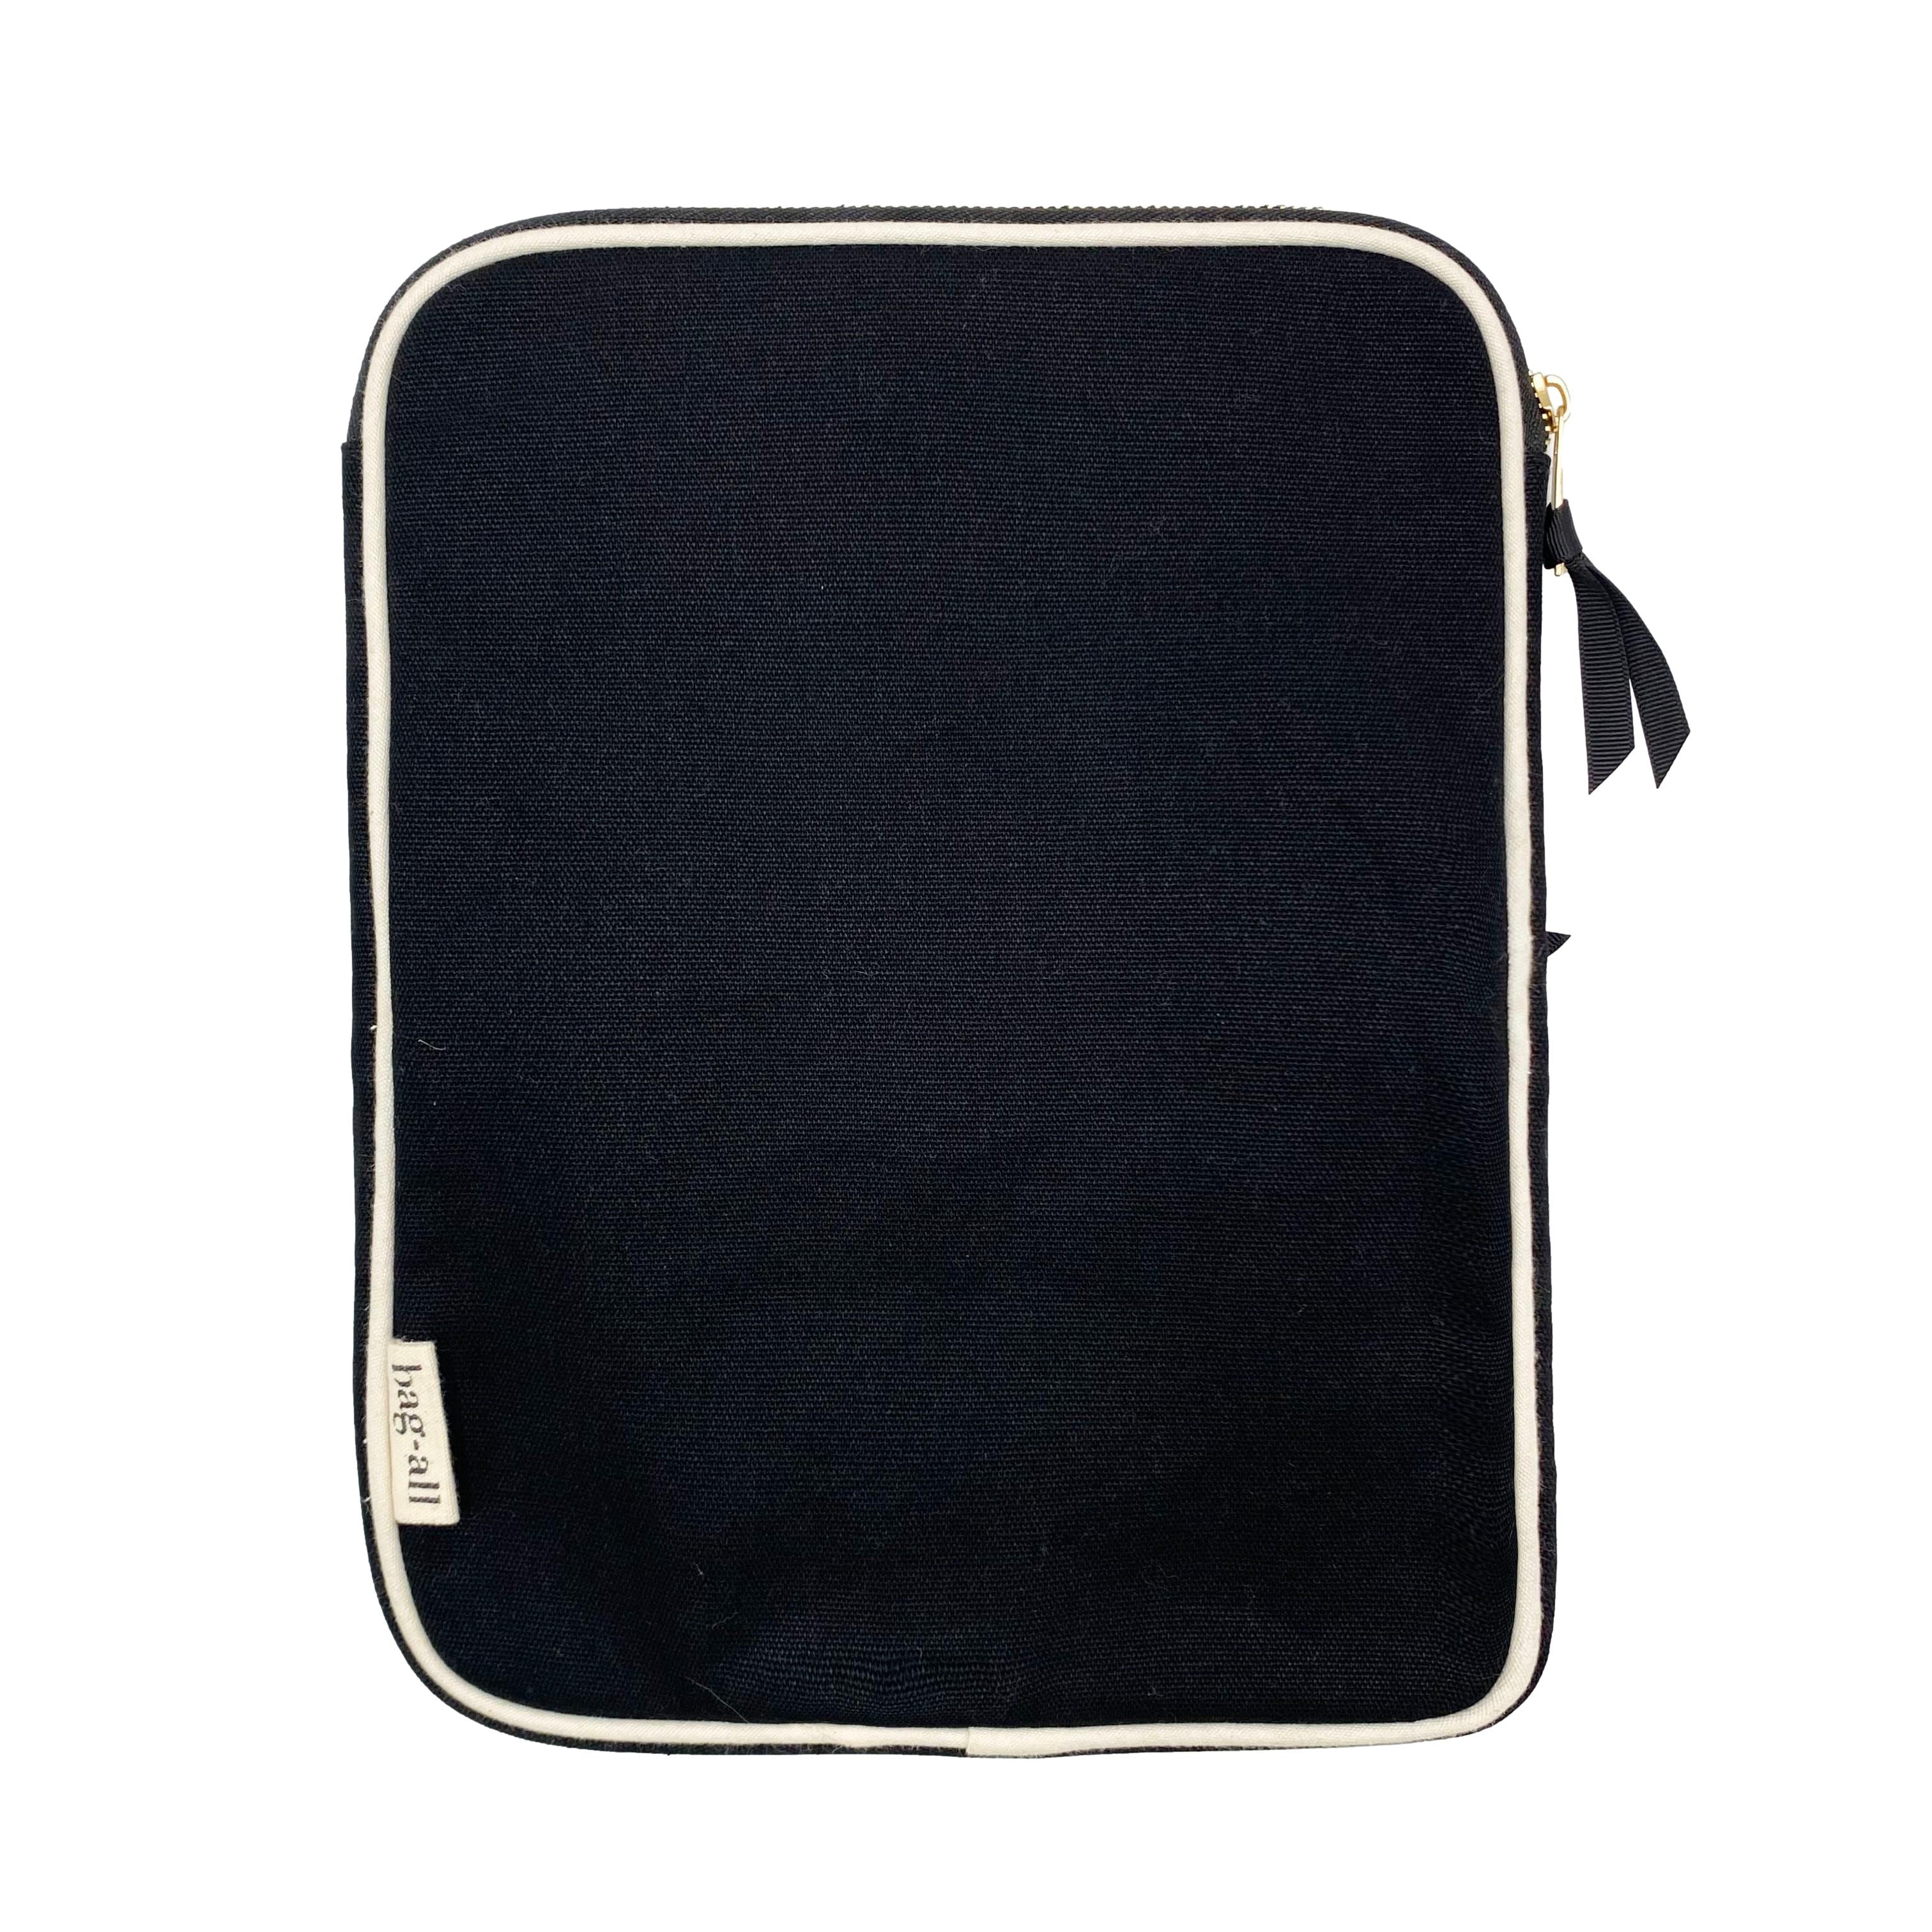 Tablet Case 11", Charger Pocket, Black | Bag-all